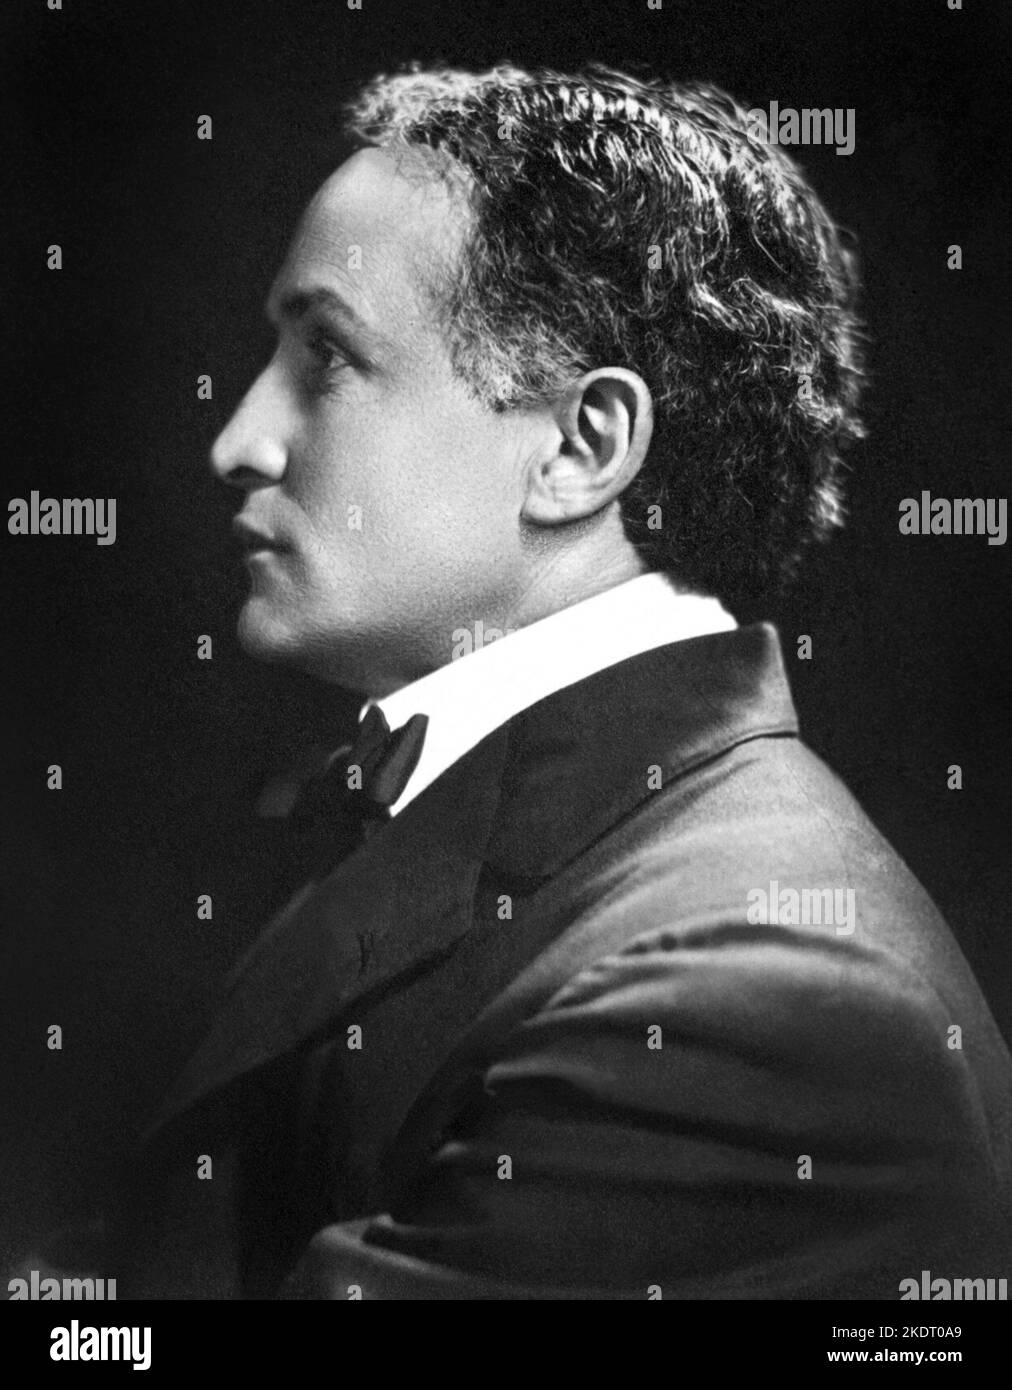 Harry Houdini (1874-1926), Hungarian-American illusionist and escape artist, in a profile portrait c1920. Stock Photo